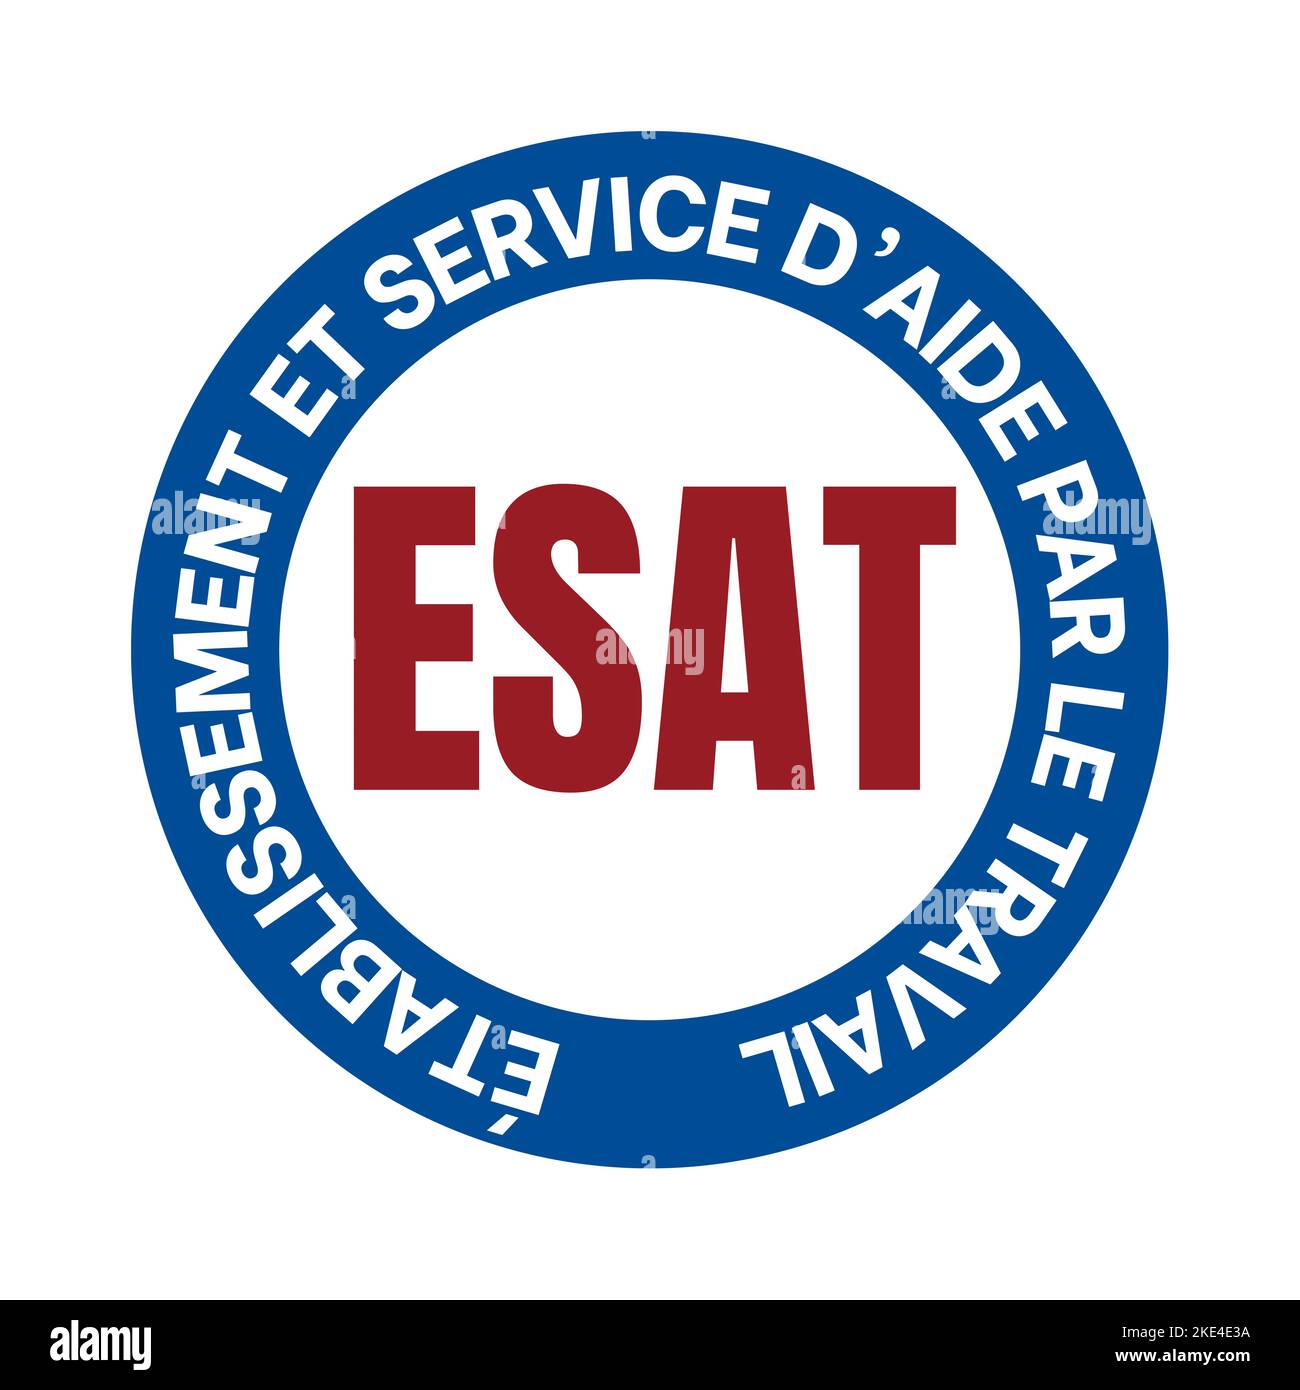 Establishment and service of help through work symbol icon called ESAT etablissement et service d'aide par le travail in French language Stock Photo